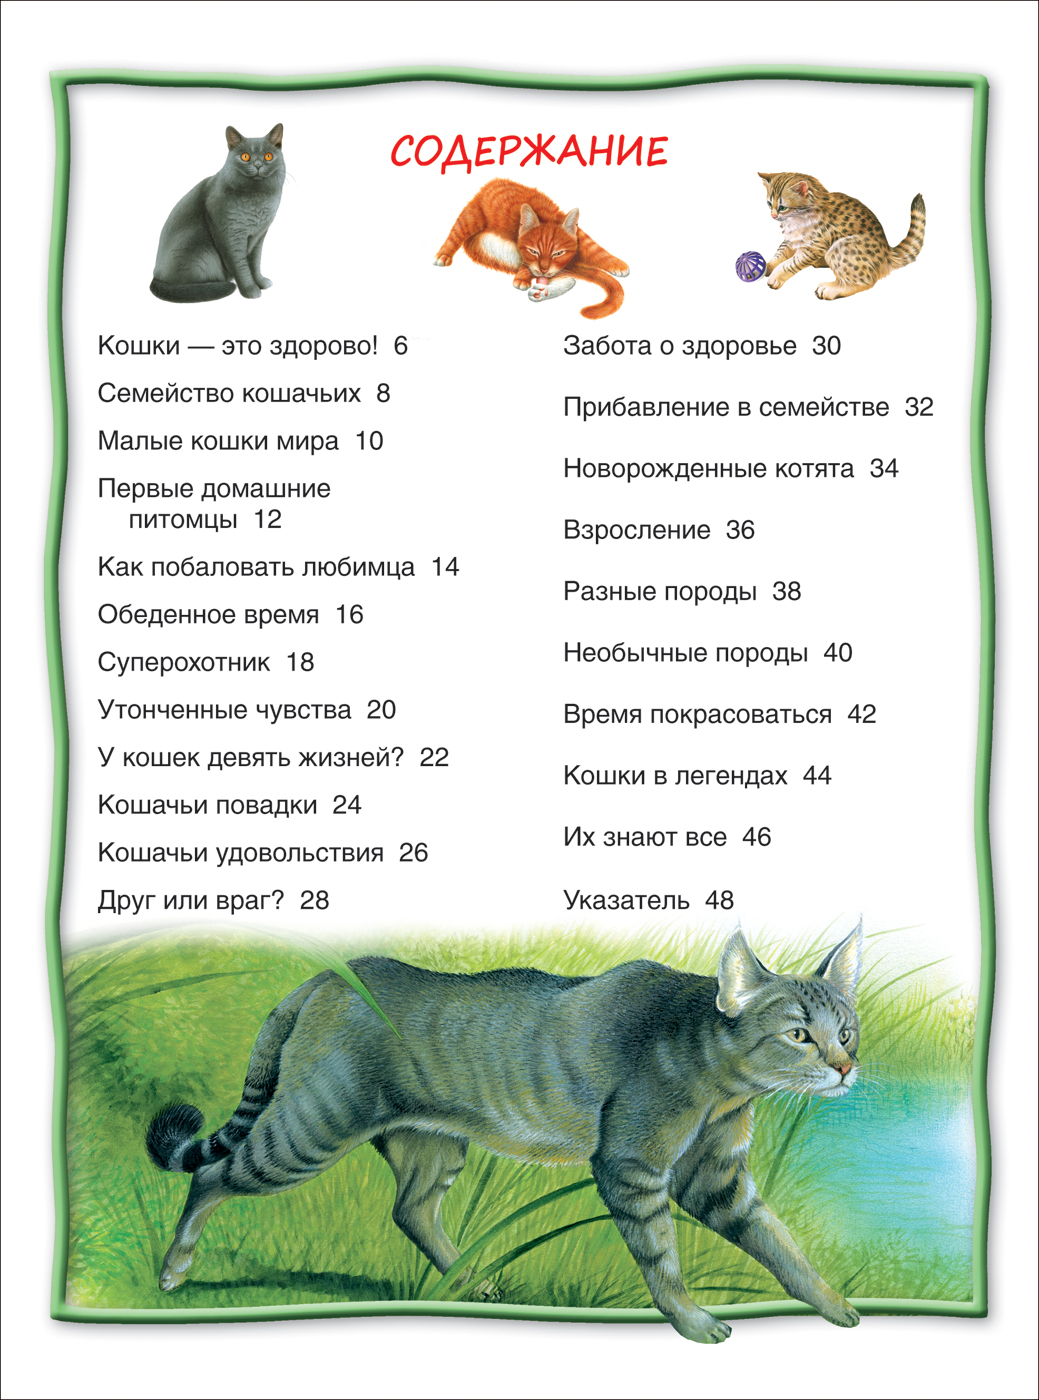 100 интересных фактов о кошках